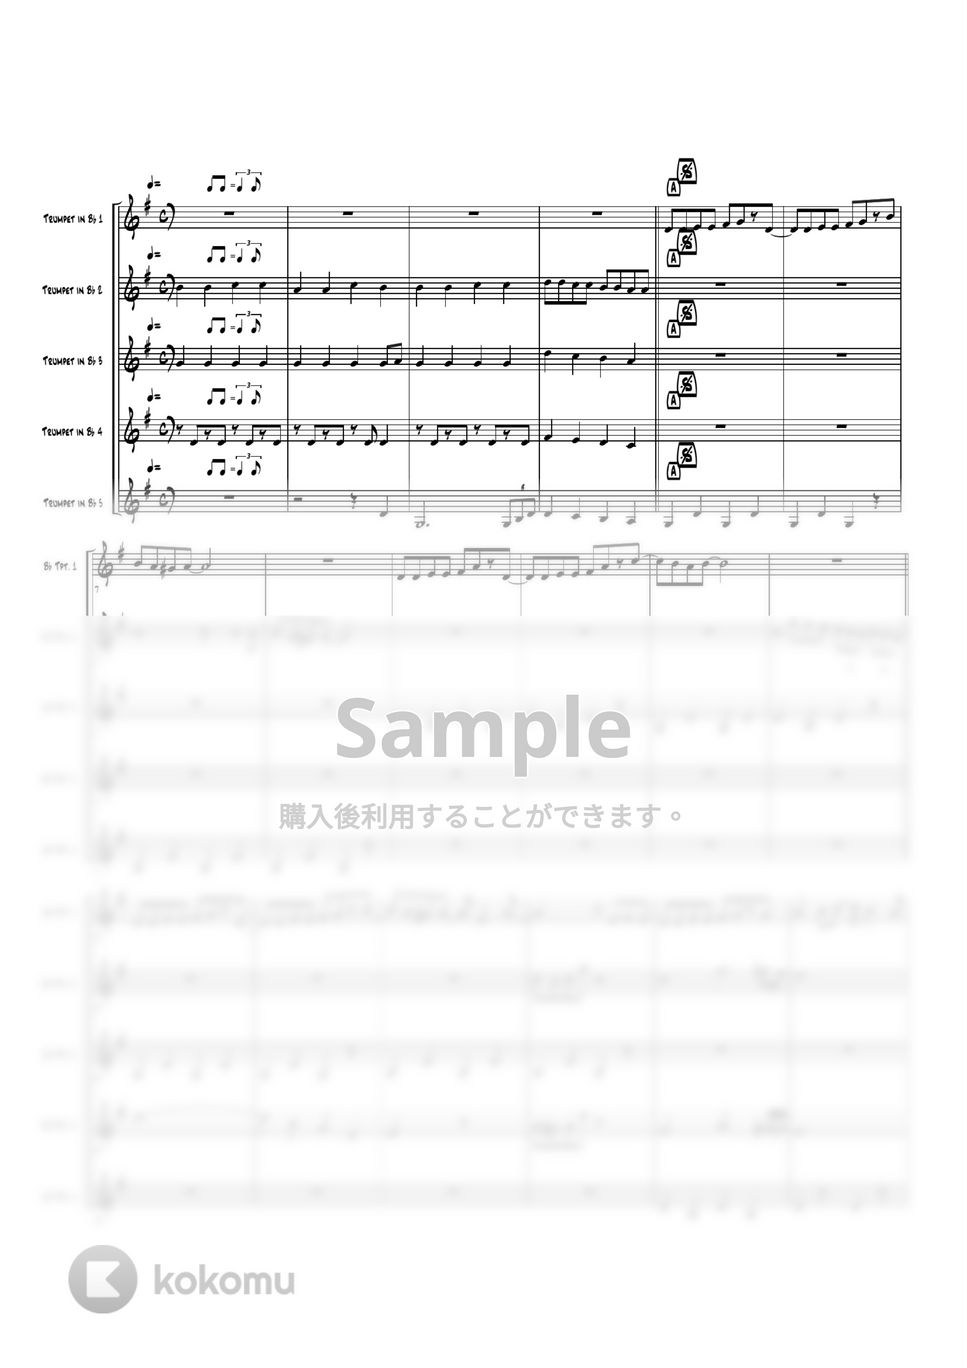 mao - 夢をかなえてドラえもん (トランペット5重奏) by 高田将利